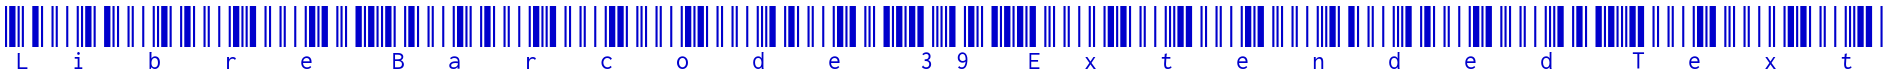 Libre Barcode 39 Extended Text Schriftart